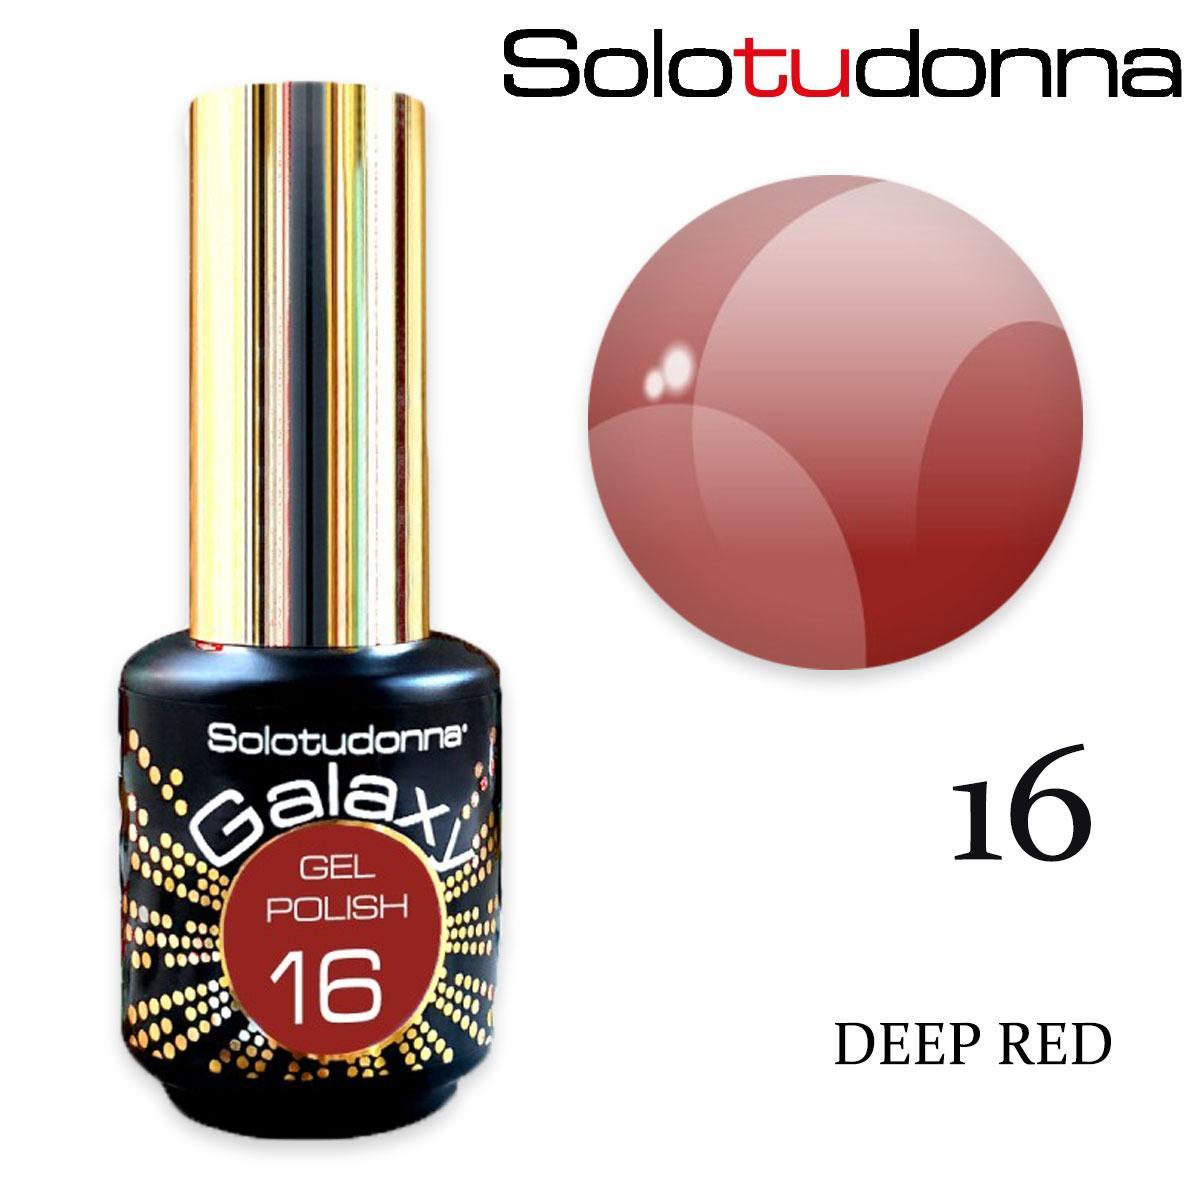 Solo tu donna gel polish galaxy 6ml deep red n.16